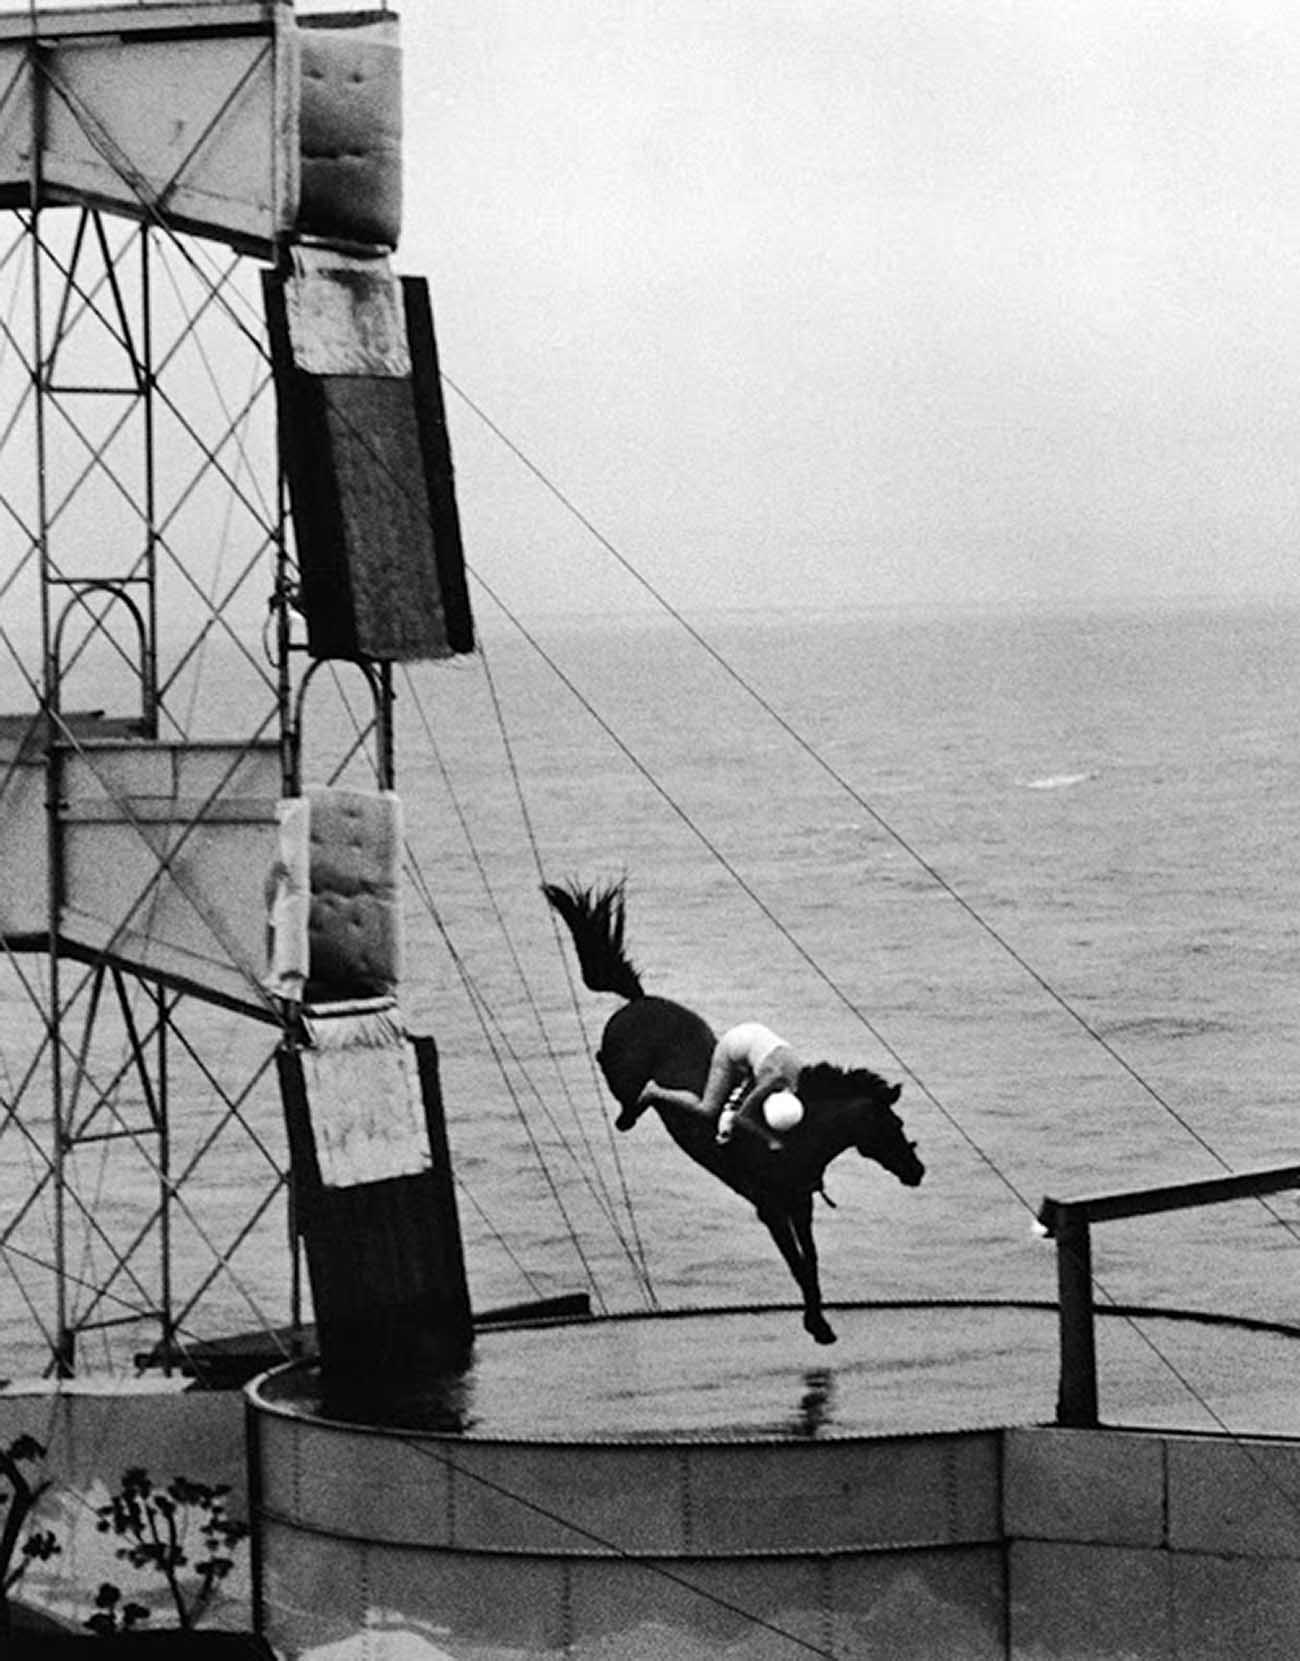 Ngựa lặn: Một trong những môn thể thao nguy hiểm nhất hành tinh những năm 1900-1970 - Ảnh 6.